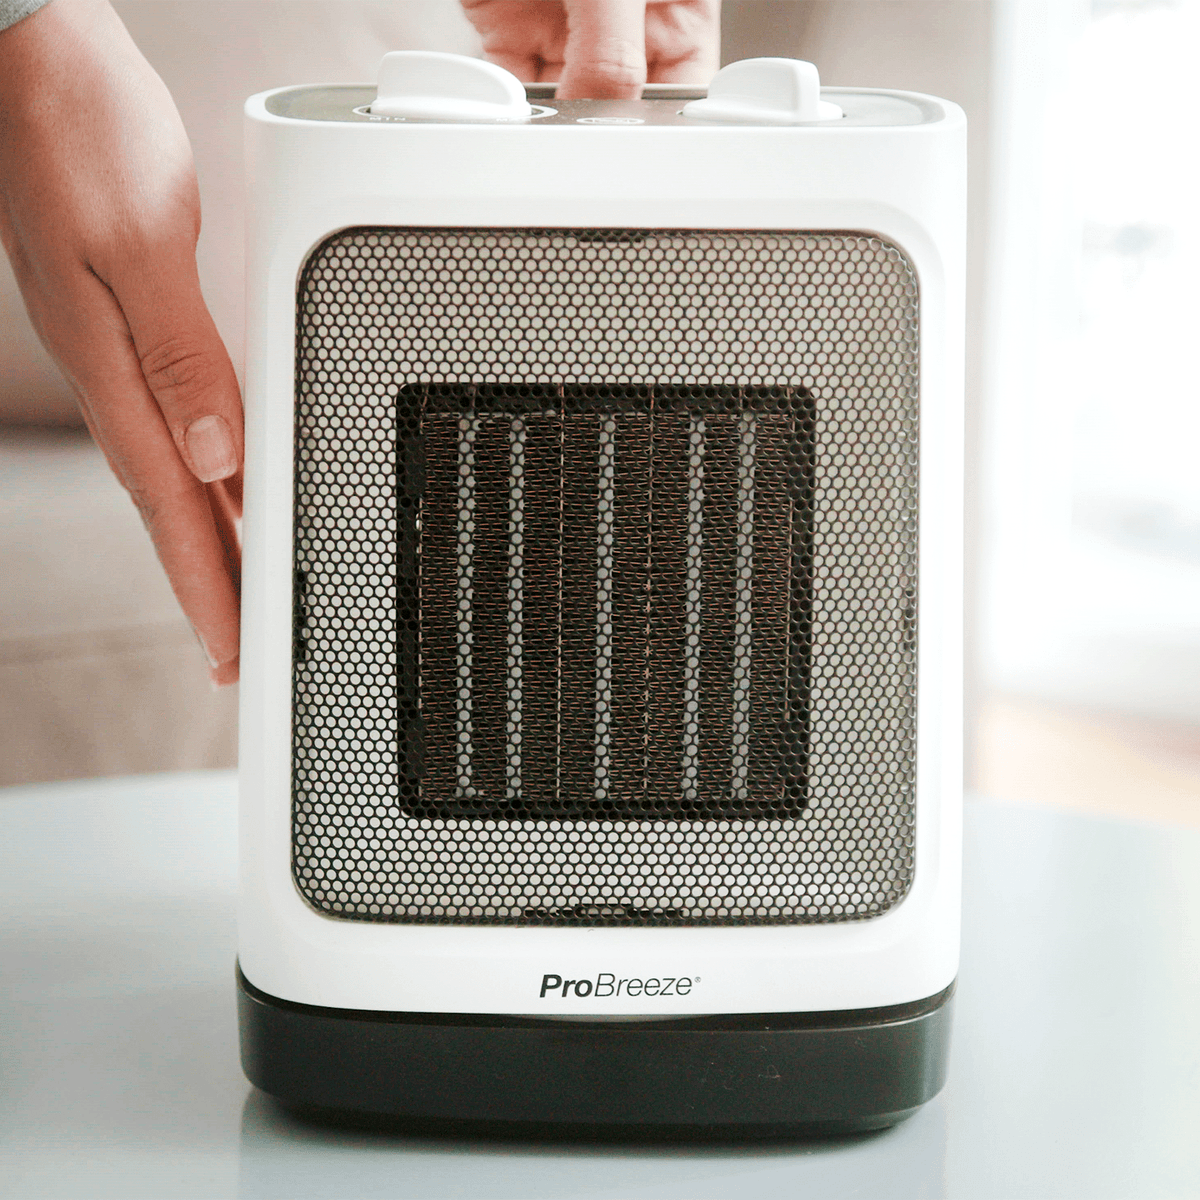 Chauffage électrique portable avec thermostat, petit radiateur en céramique  de bureau avec basculement et protection contre la surchauffe